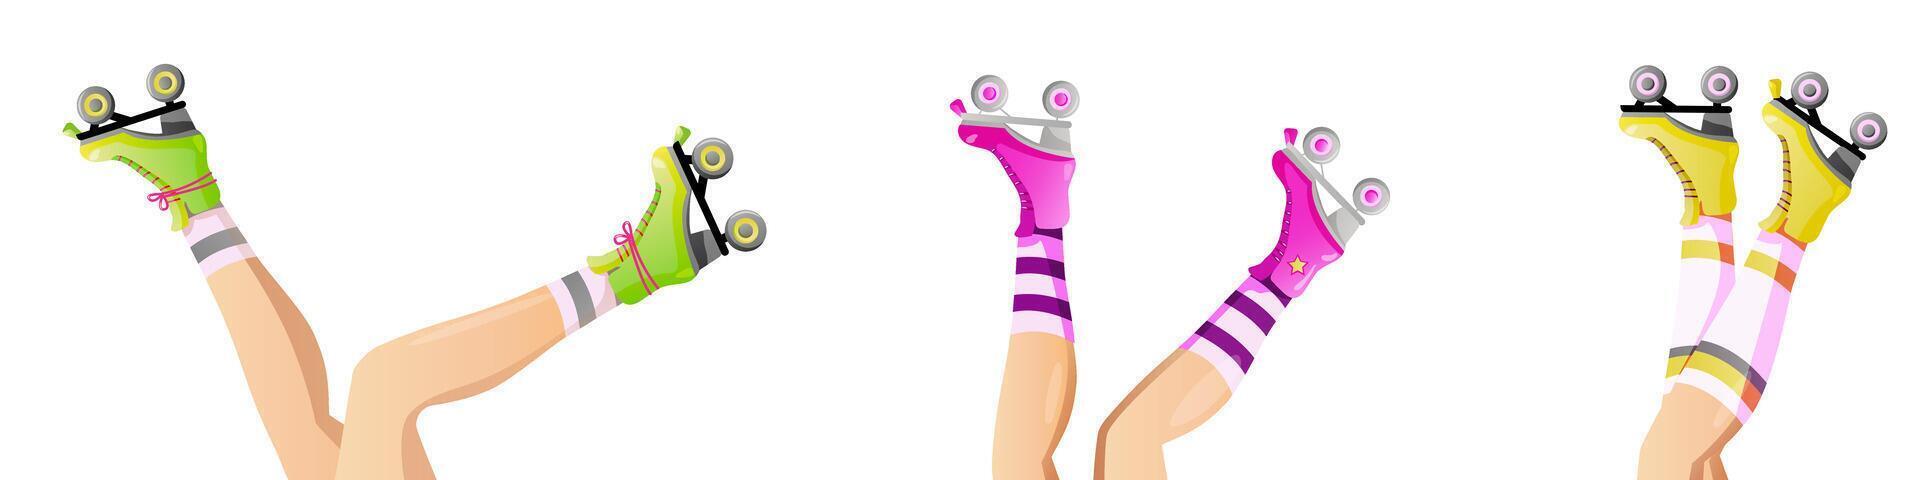 conjunto de rodillo patines y hembra piernas. muchachas vistiendo rodillo patines mano dibujado de moda vector ilustración de piernas y patines para web bandera, póster, tarjeta